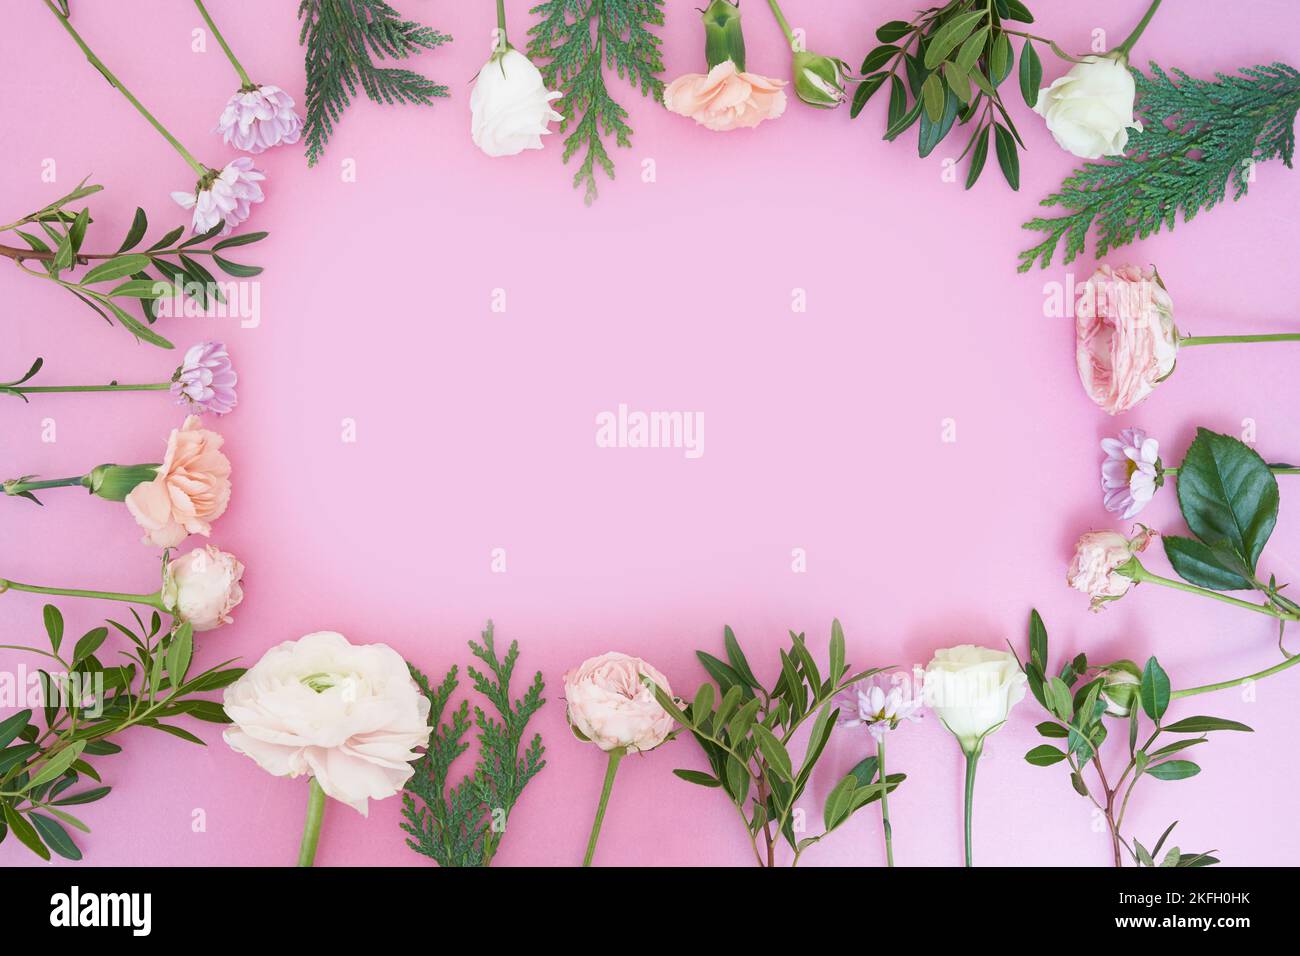 Blick von oben. Nahaufnahme eines Rahmens von frischen Blumen Rose, Ranunculus, Nelke, Wacholder, kunda, bush Chrysantheme, auf einem rosa Hintergrund. Mit einem zu kopierenden Leerzeichen. Hochwertige Fotos Stockfoto